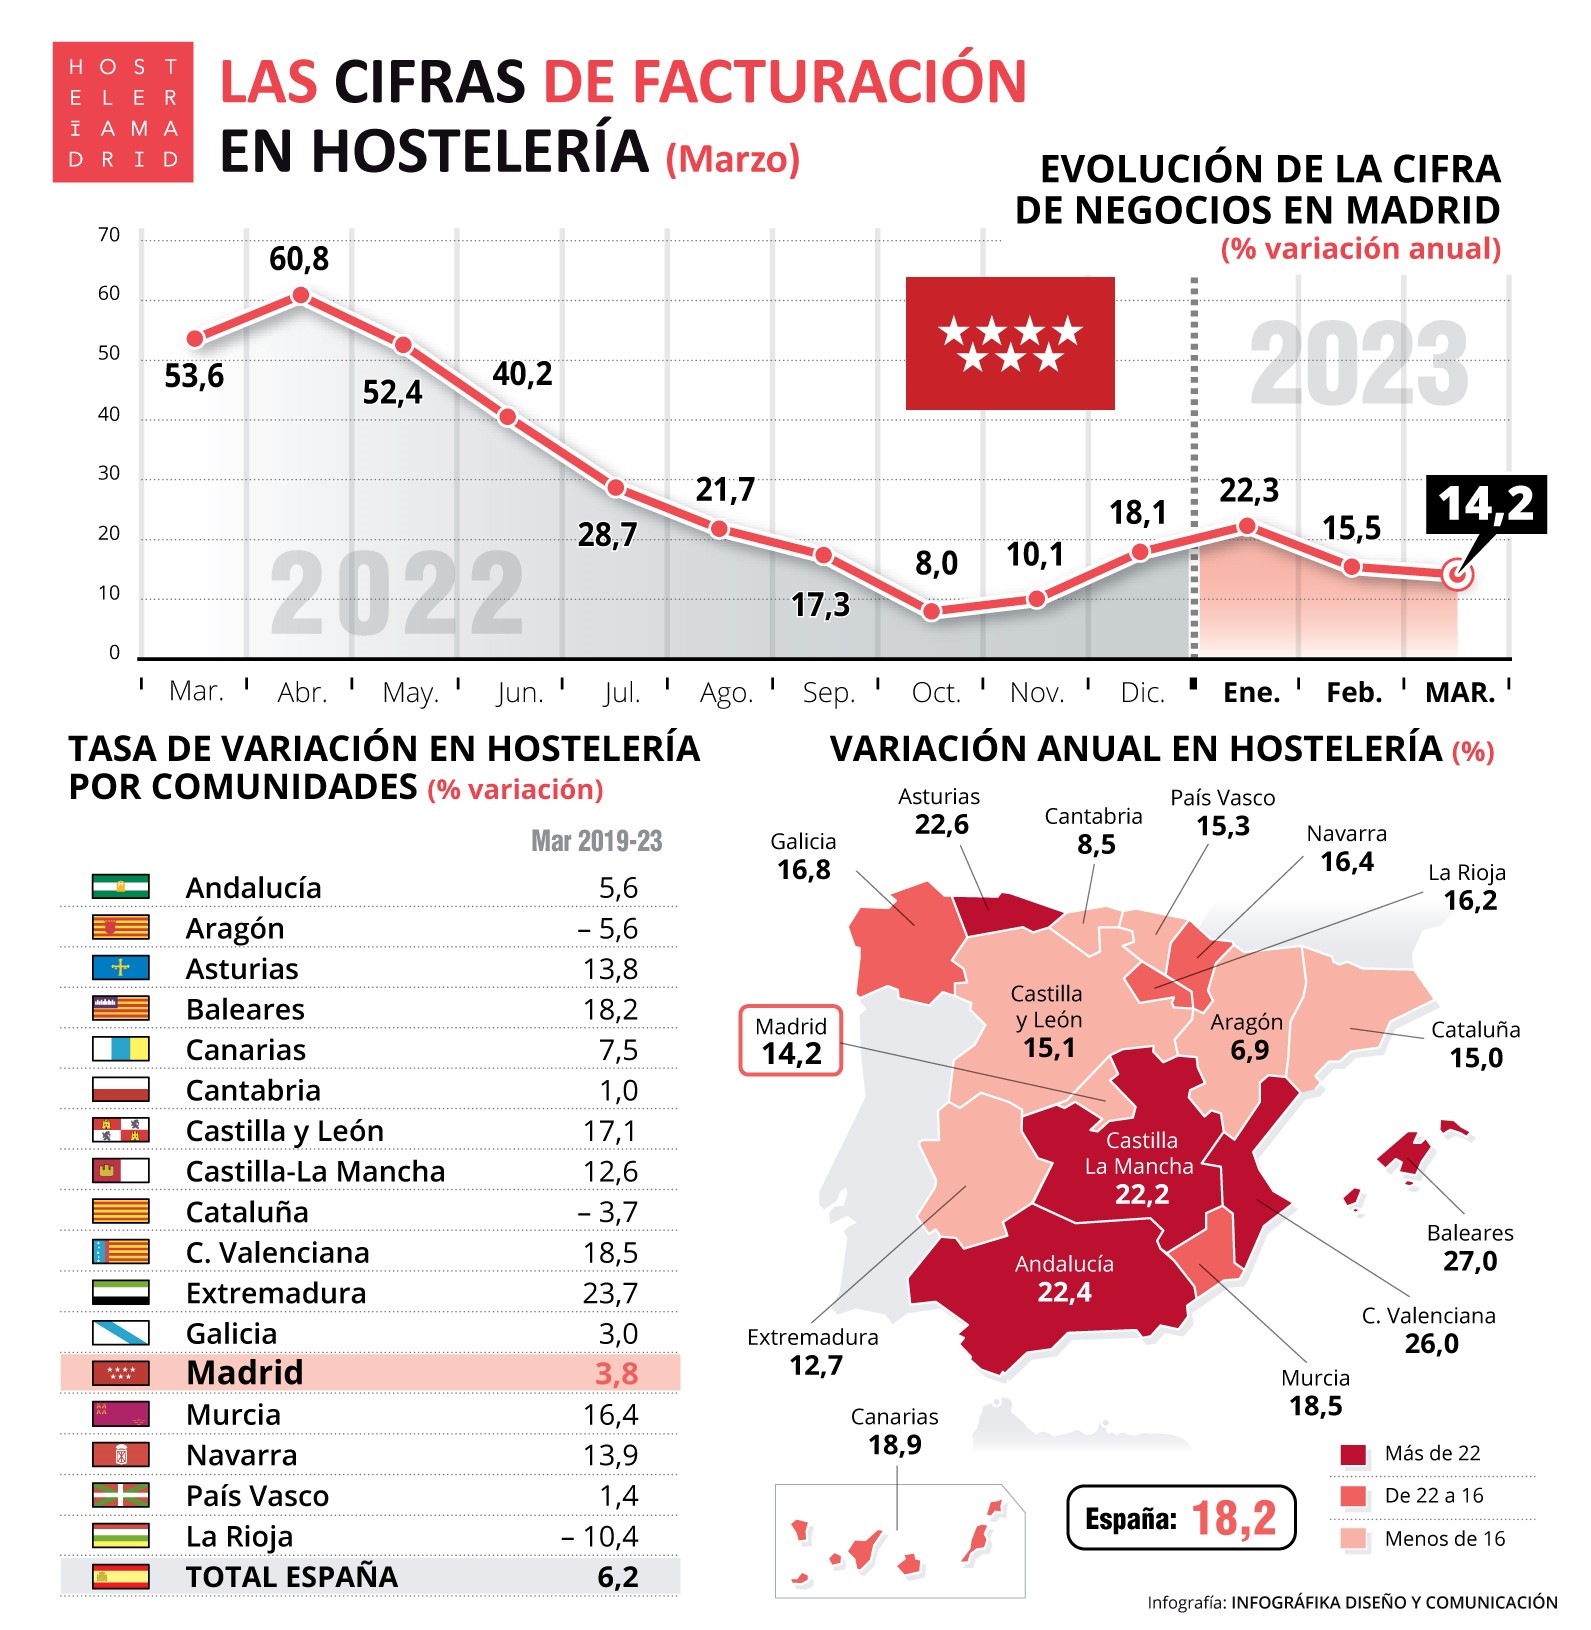 La hostelería de Madrid factura en marzo un 14,2% más que el año anterior - La Viña